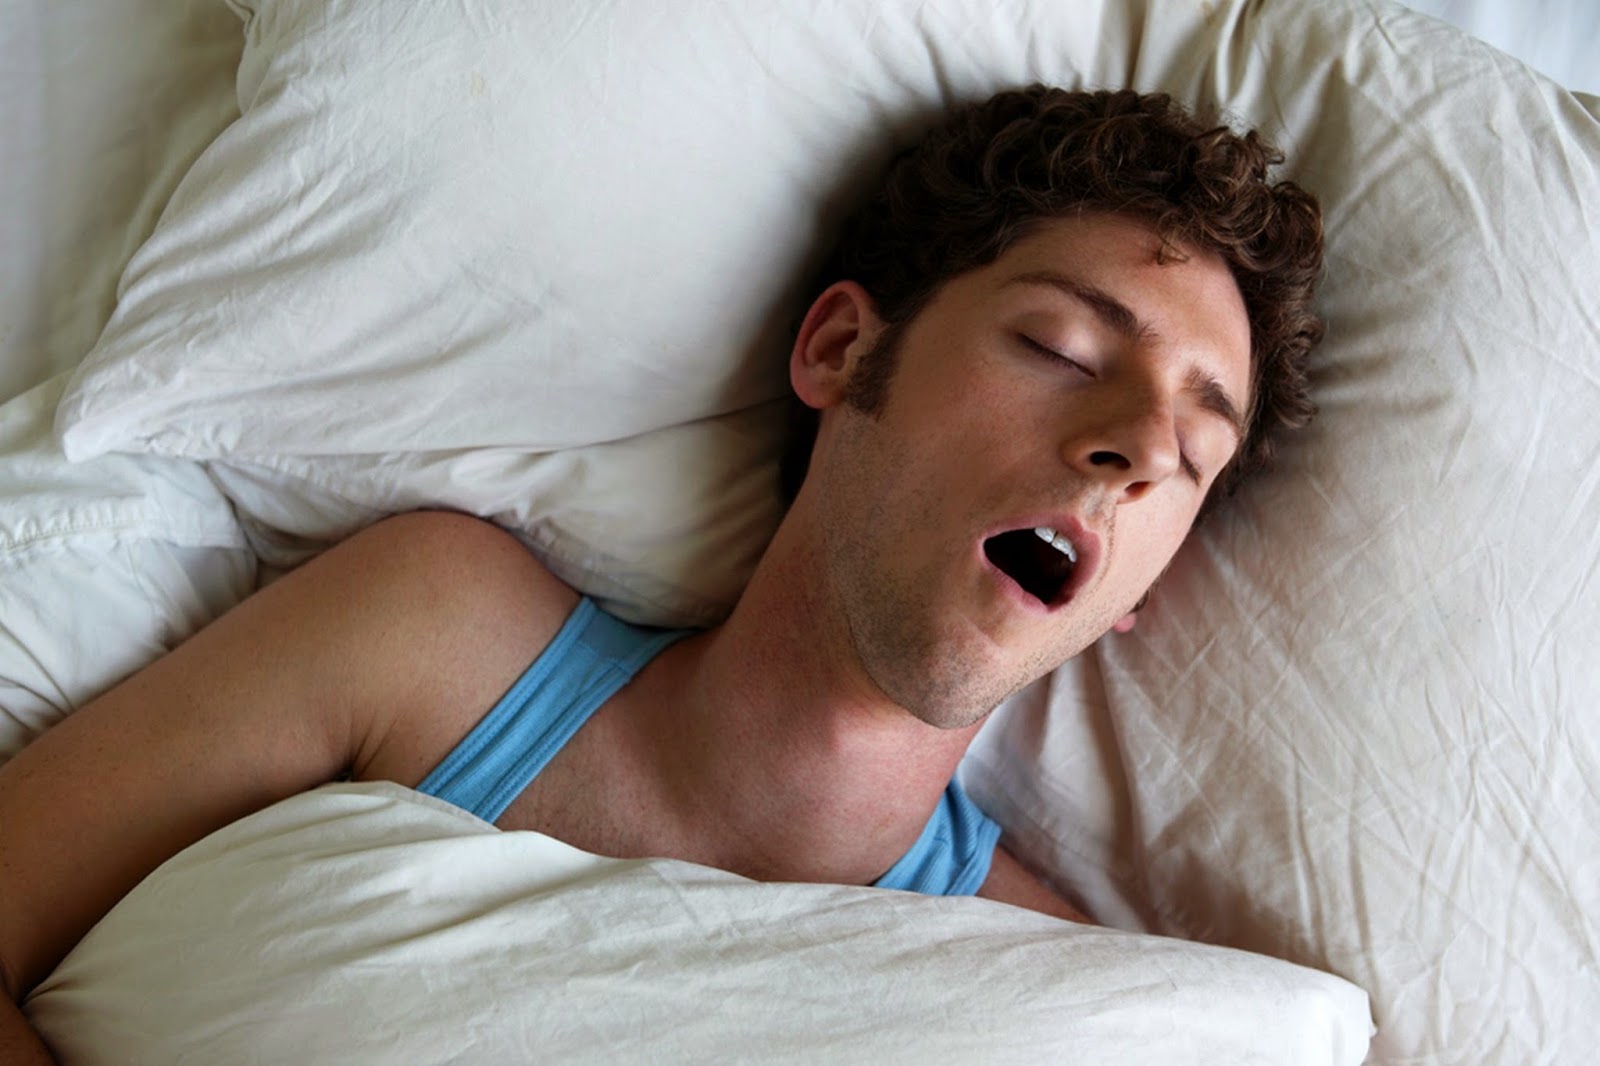 Sommeil : Pourquoi faut-il éviter de dormir la bouche ouverte?